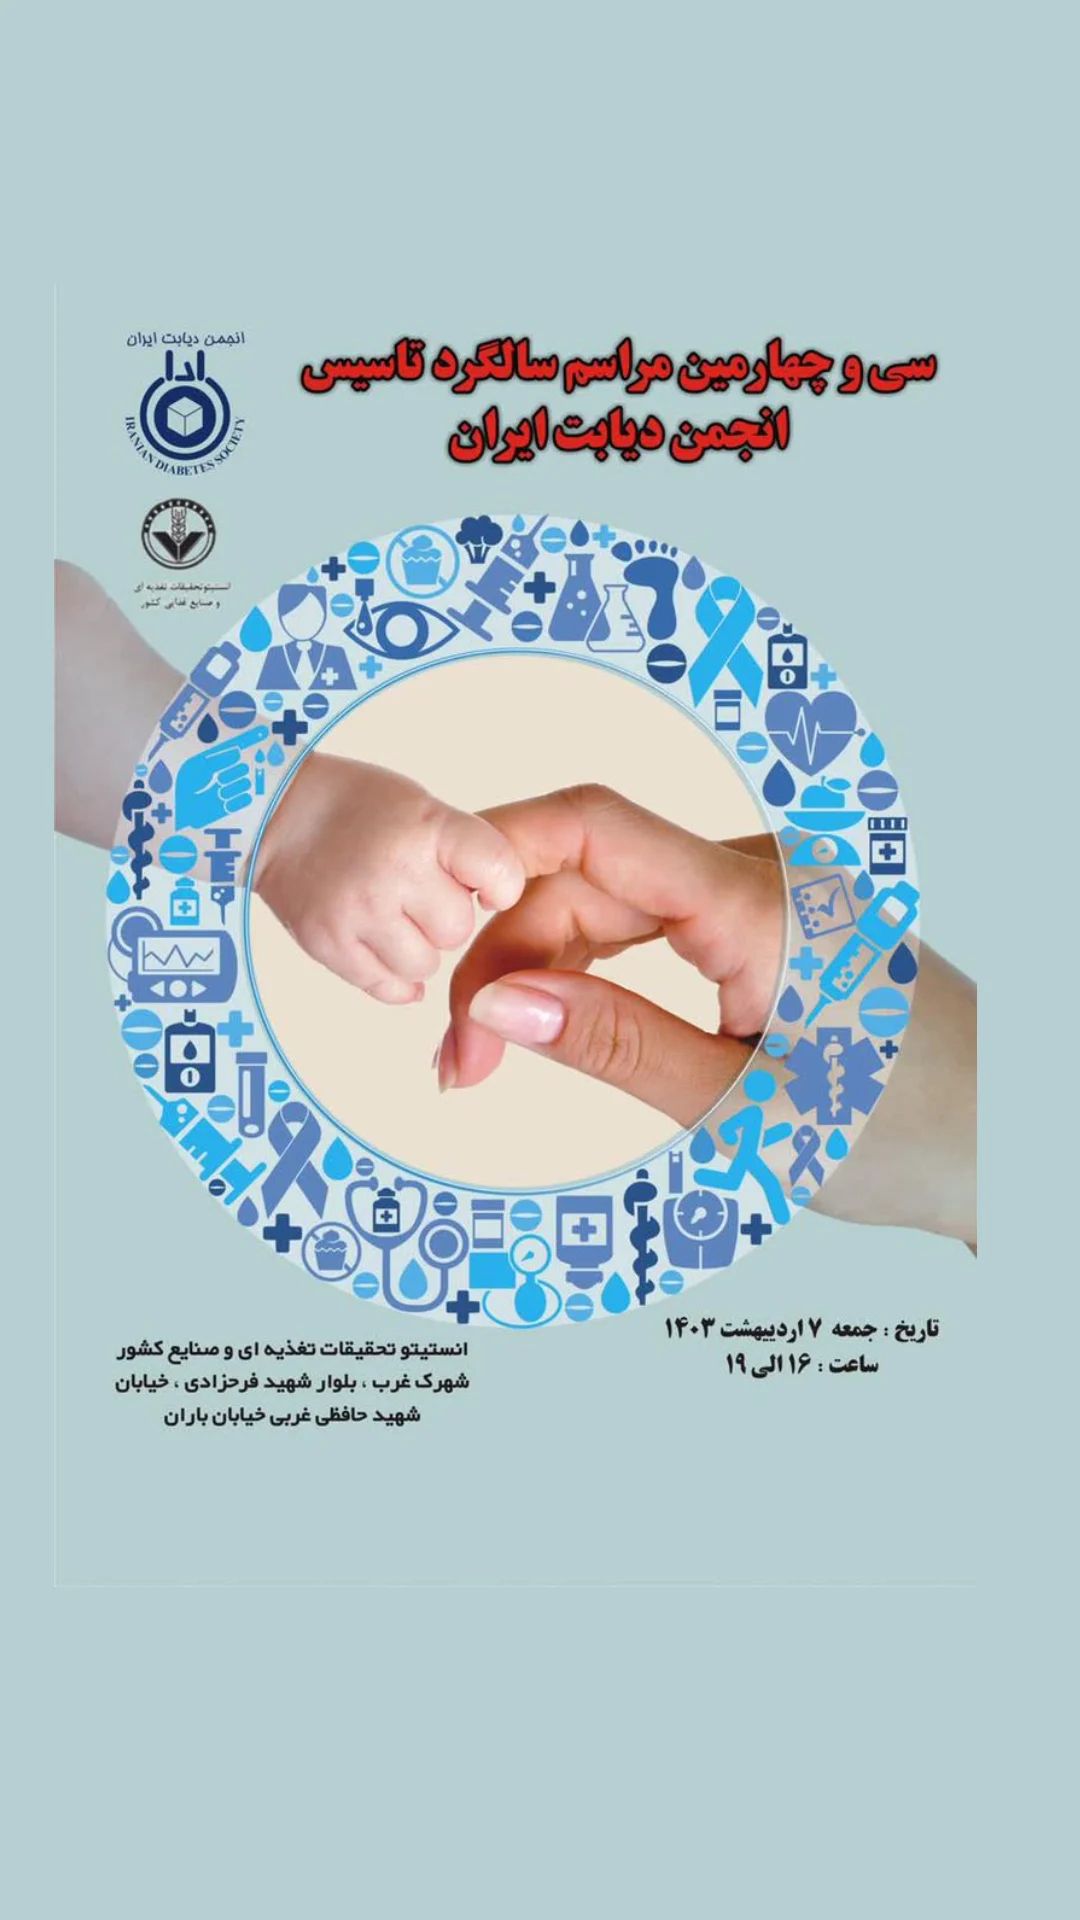 سی و چهارمین سالگرد تاسیس انجمن دیابت ایران